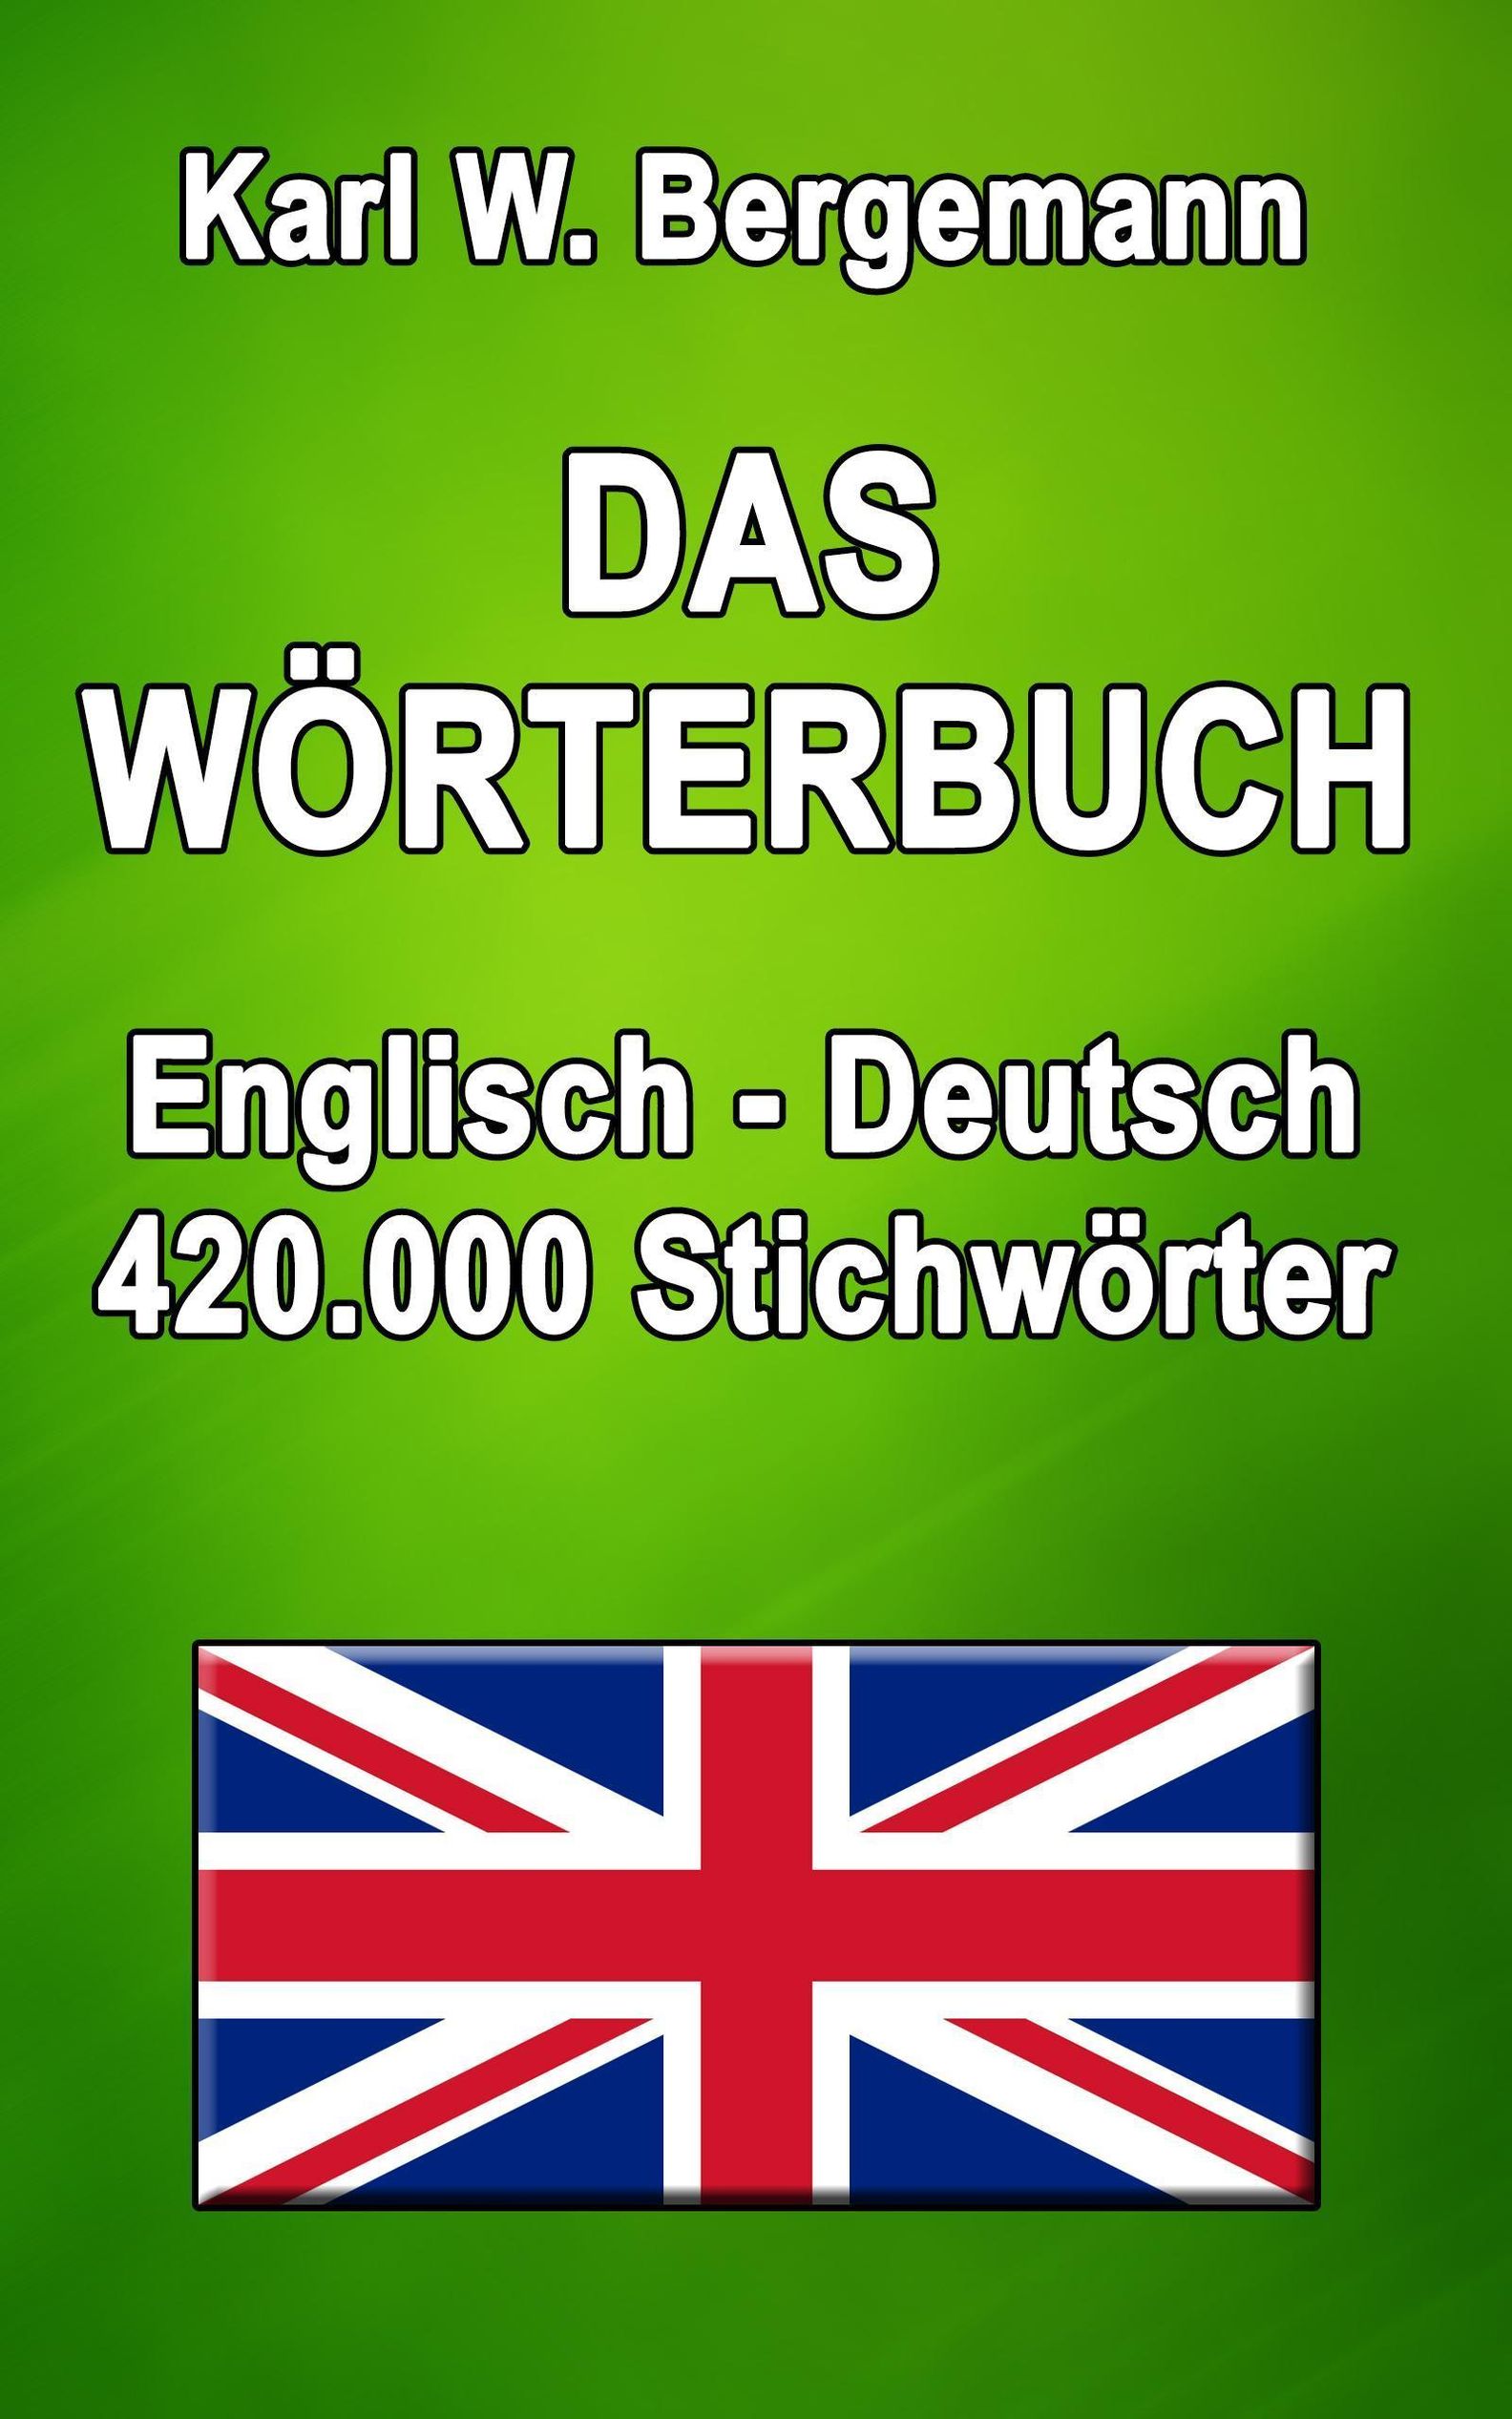 Das Wörterbuch Englisch-Deutsch eBook v. Karl W. Bergemann | Weltbild